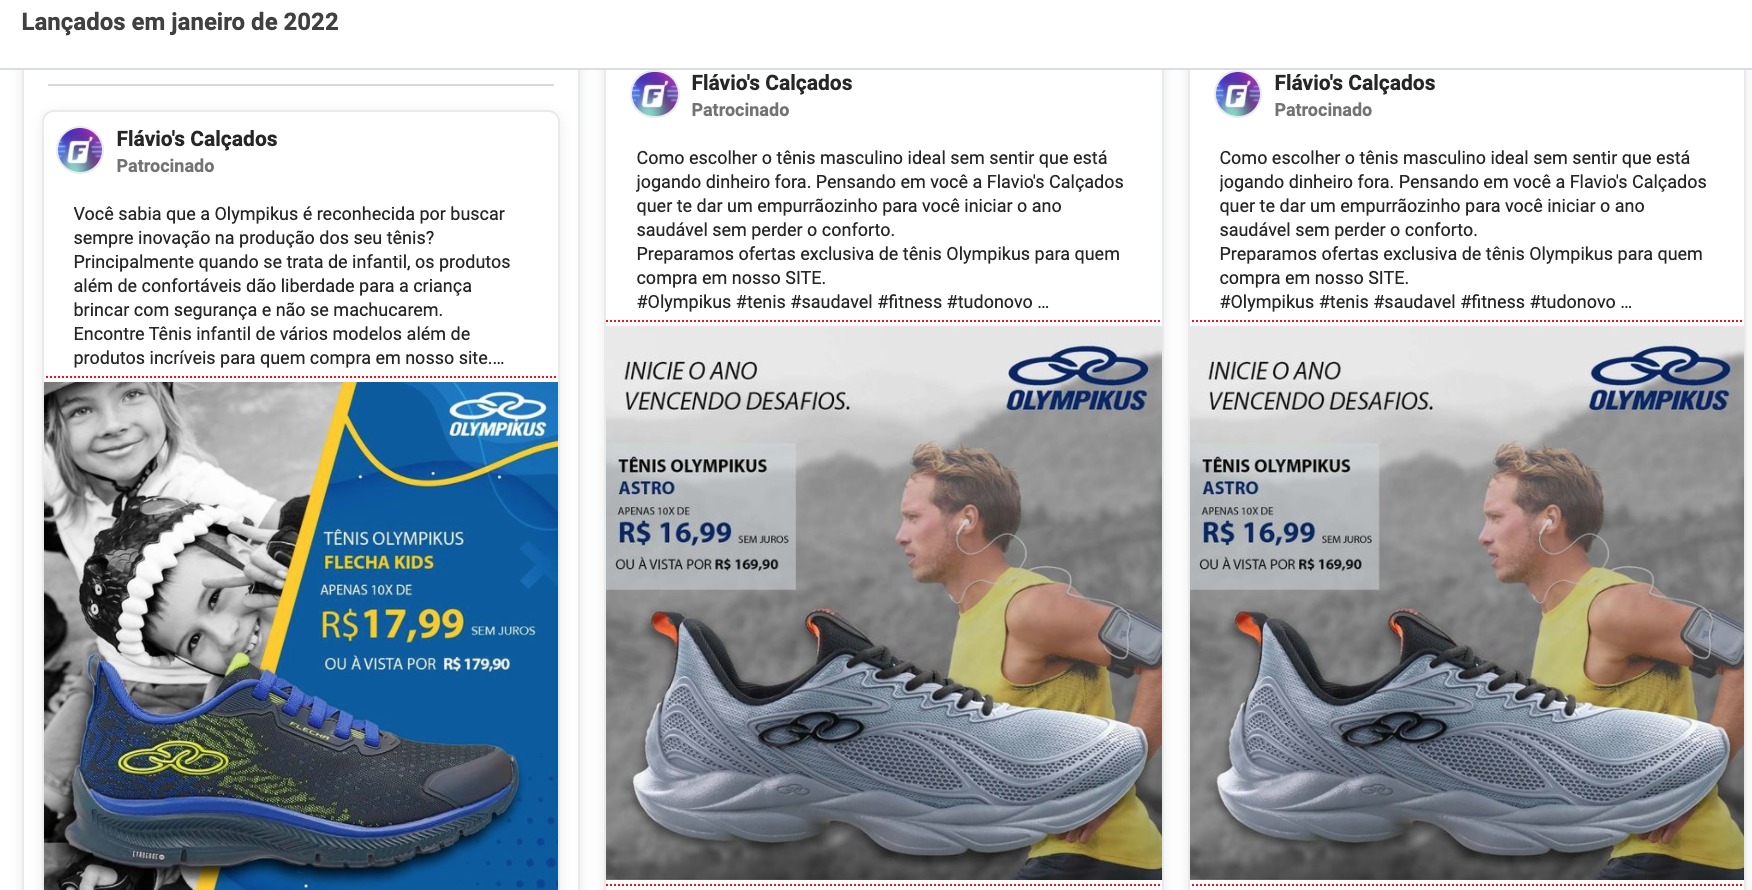 marketing digital para loja de calçados